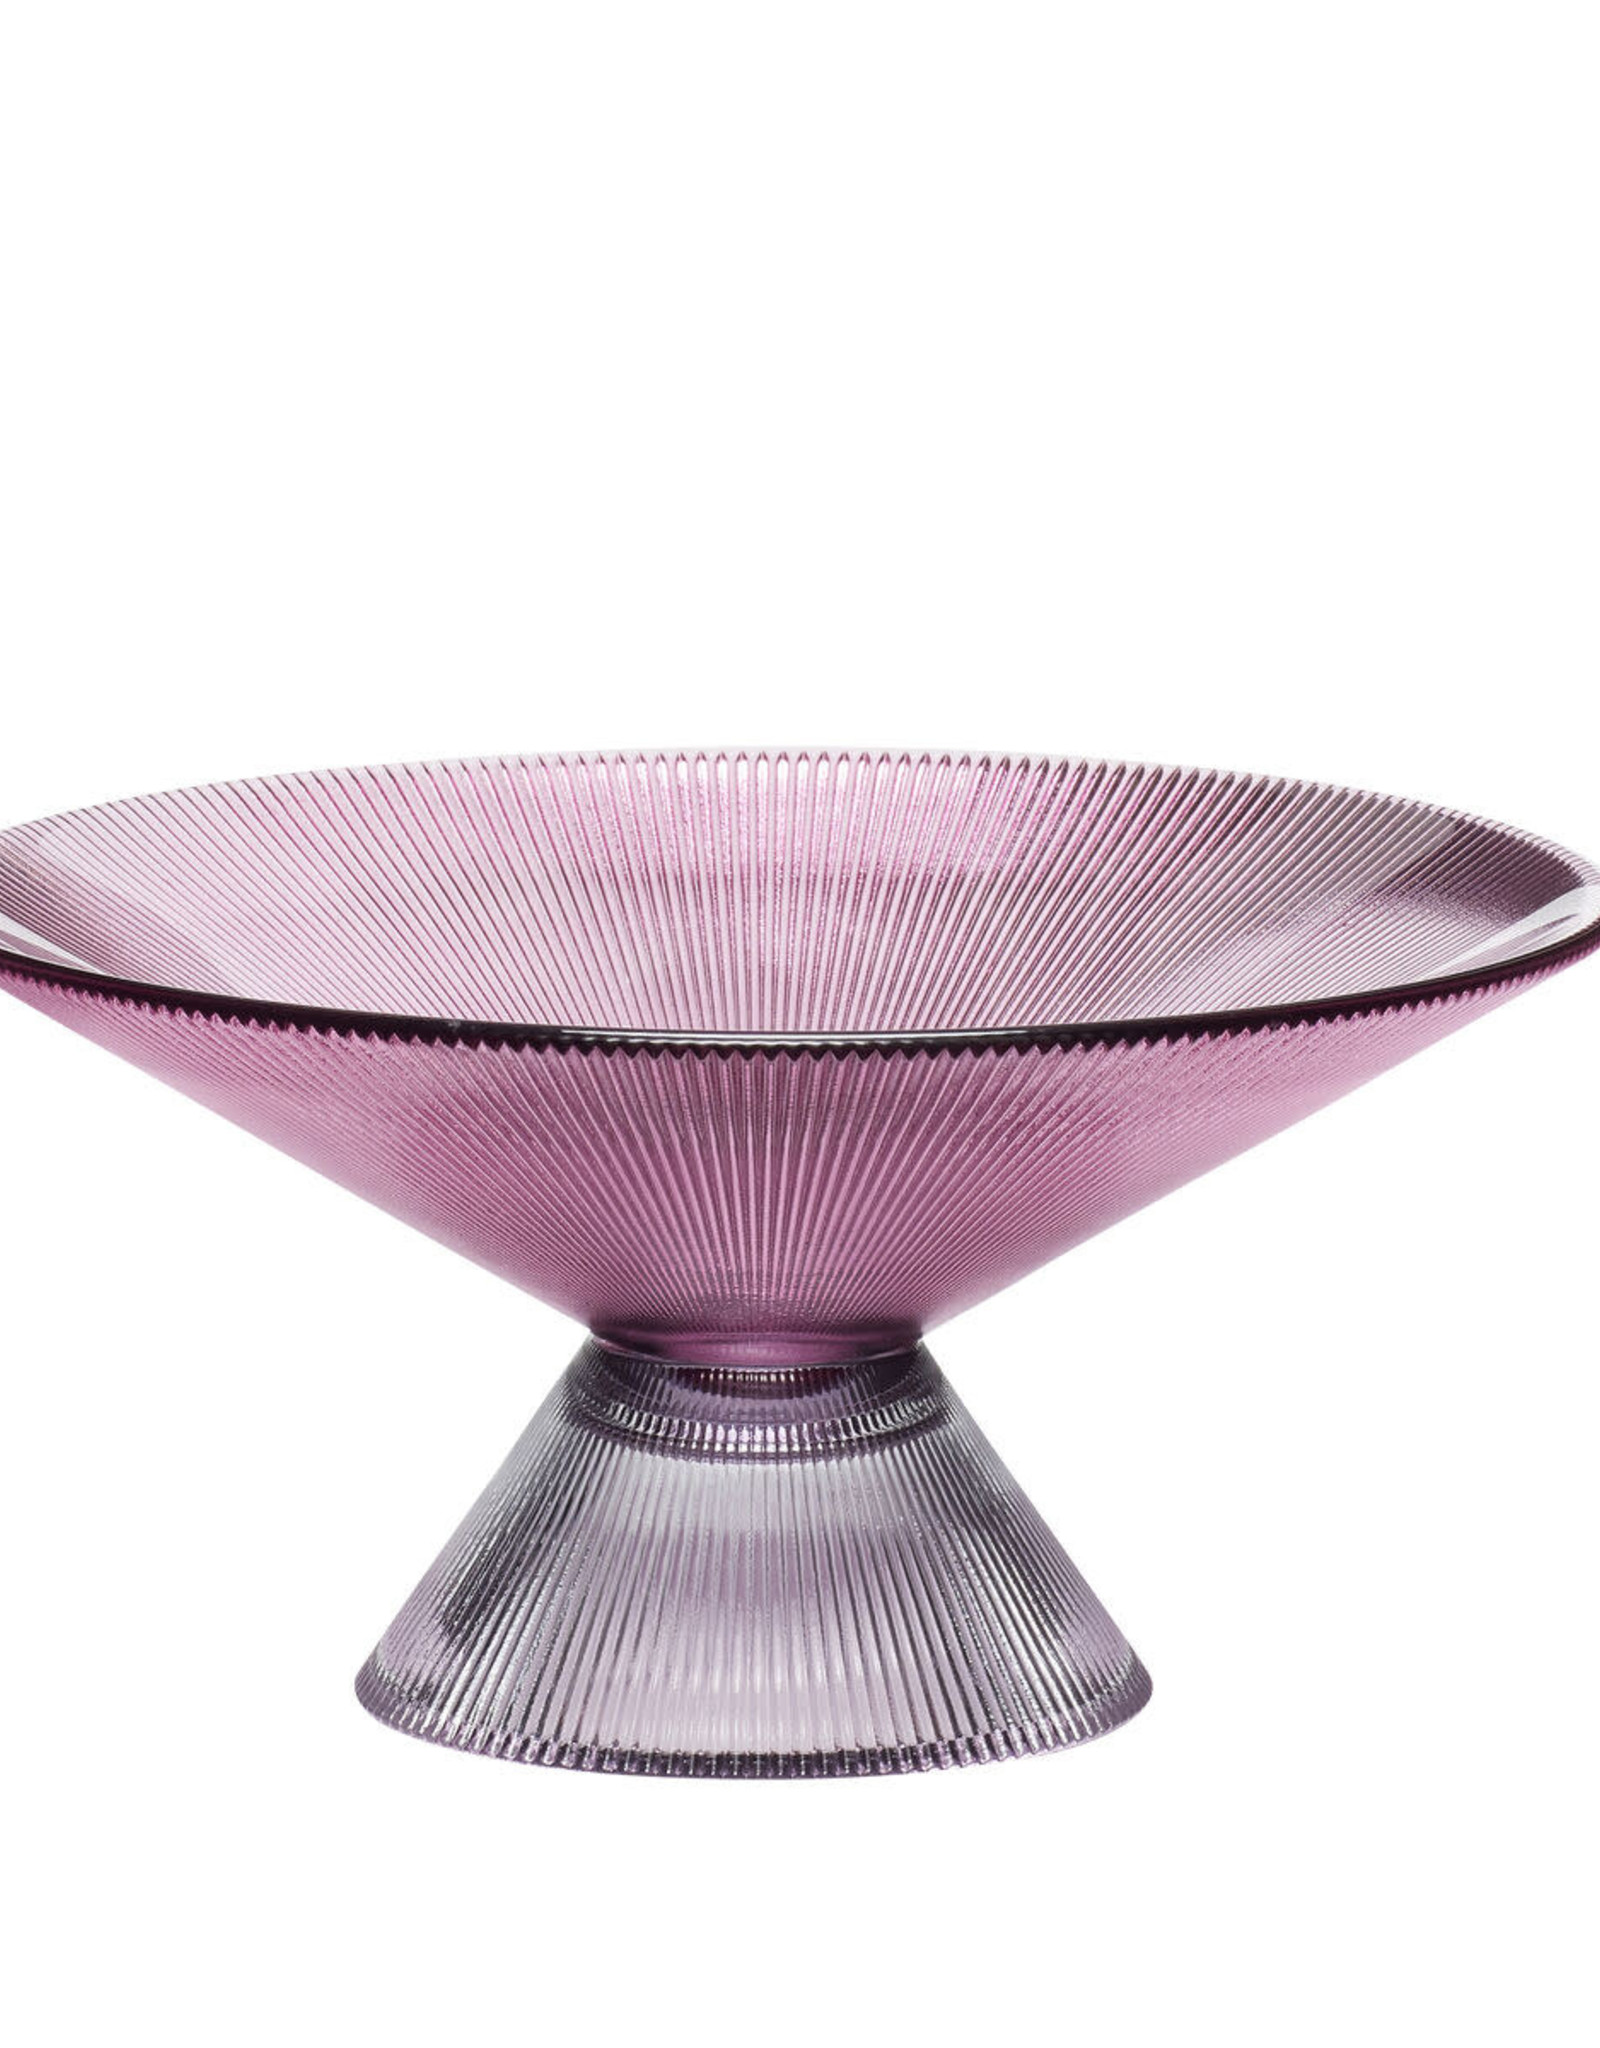 Hübsch Bonbon Bowl, glass, pink/smoked